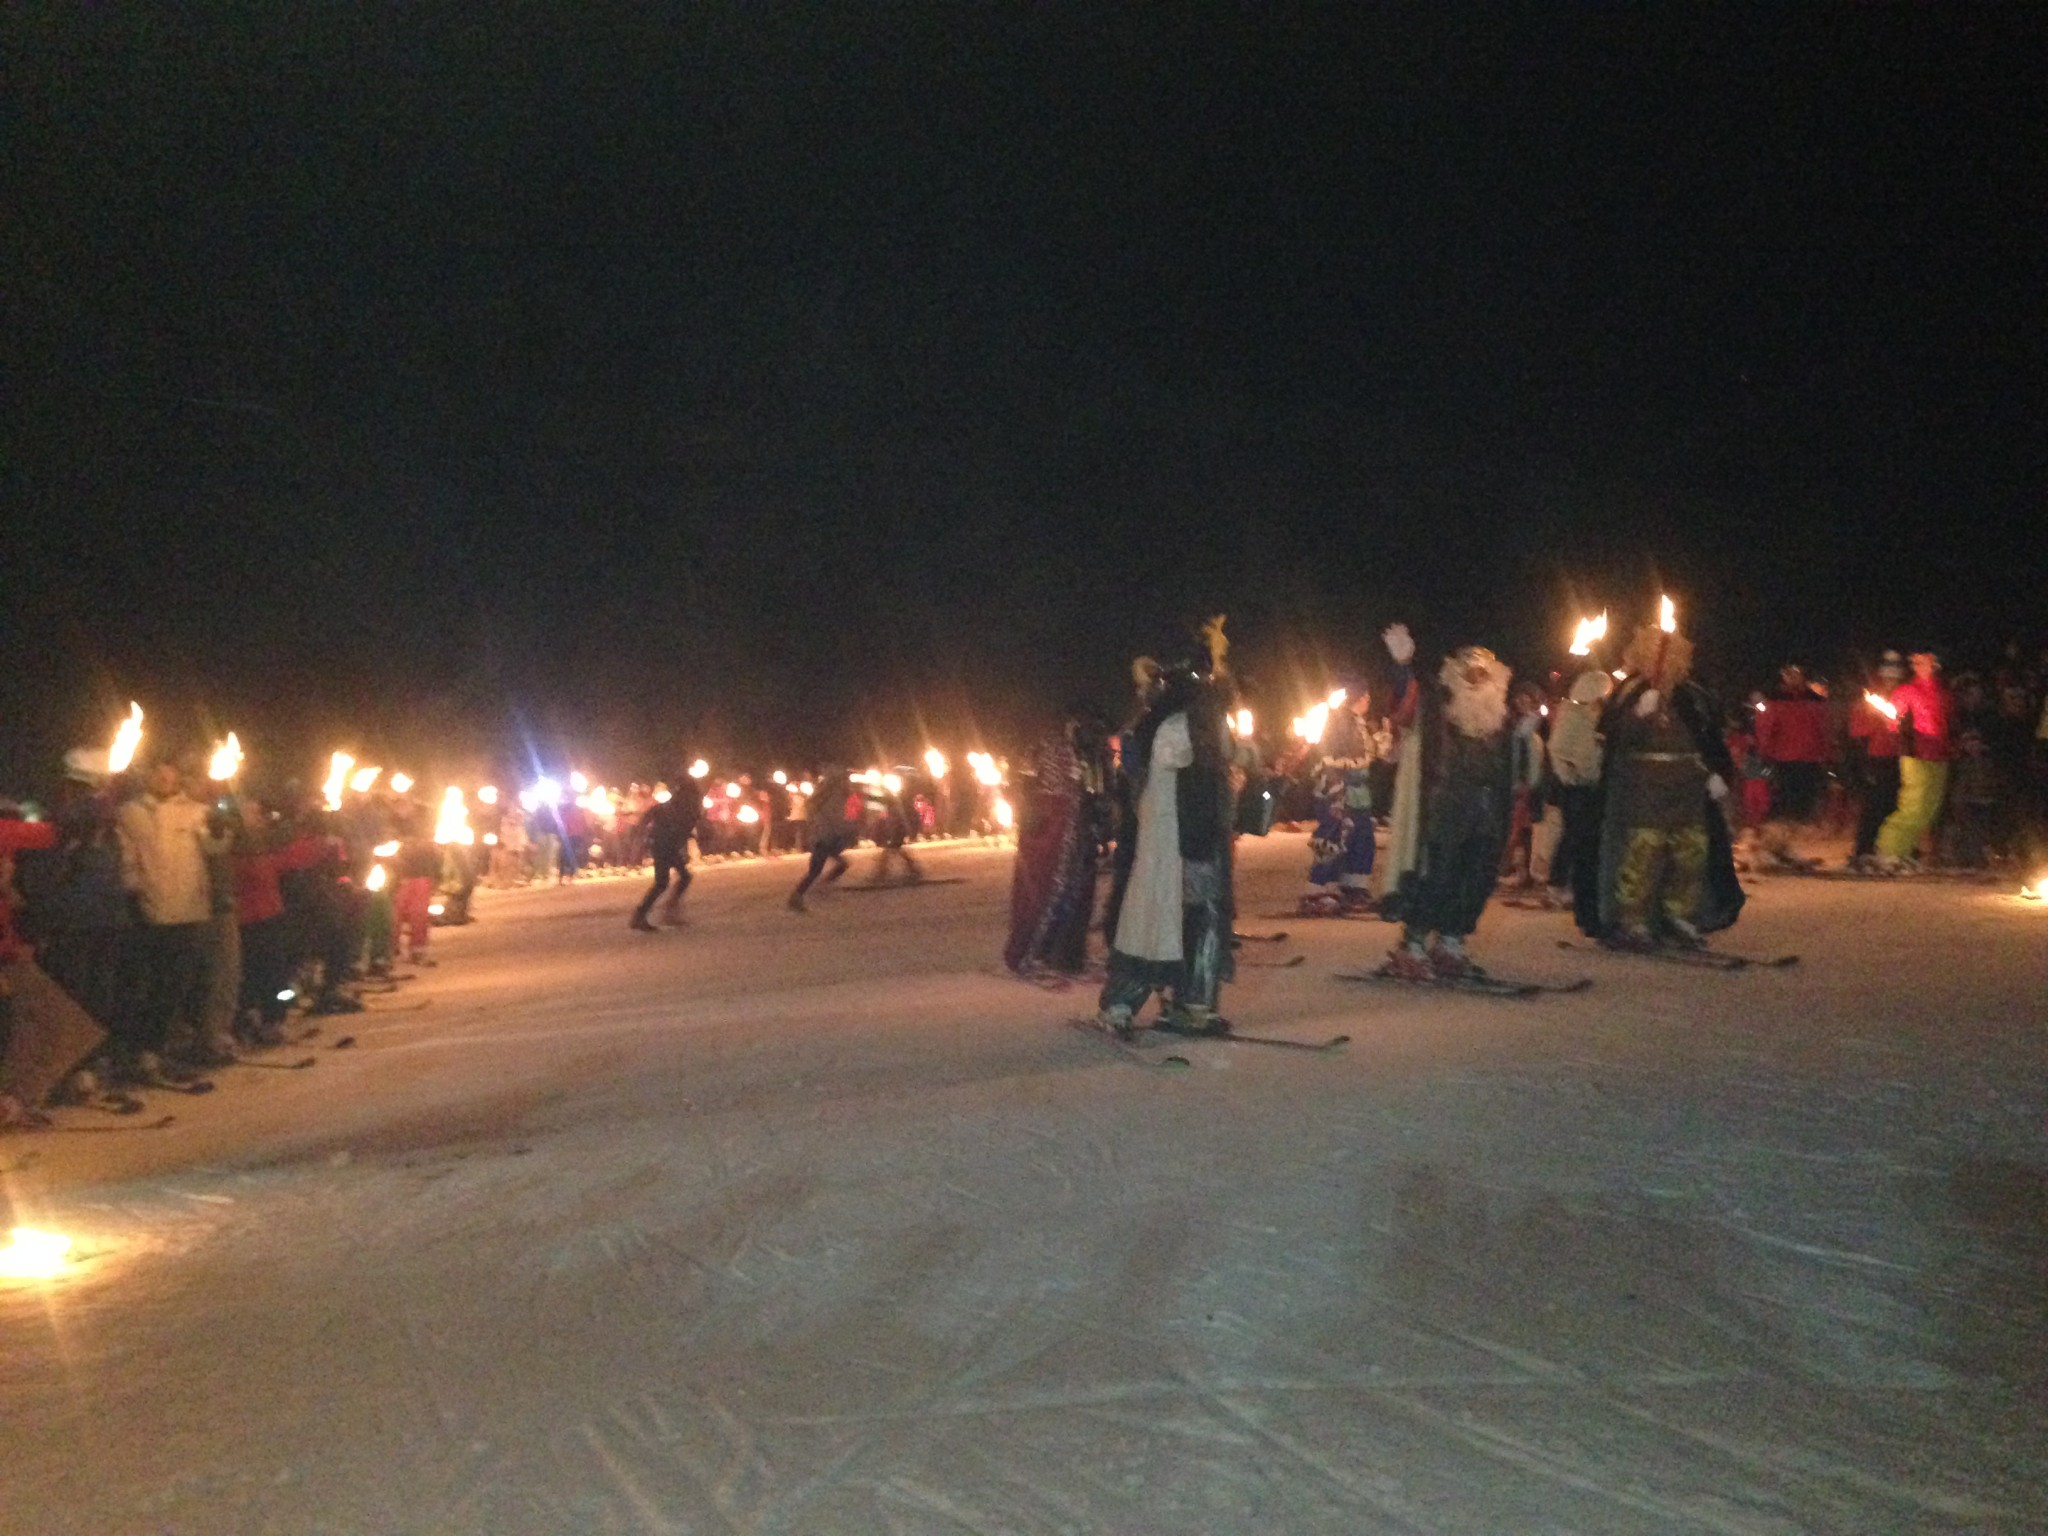 Los Reyes Magos llegan a SnowZone con antorchas